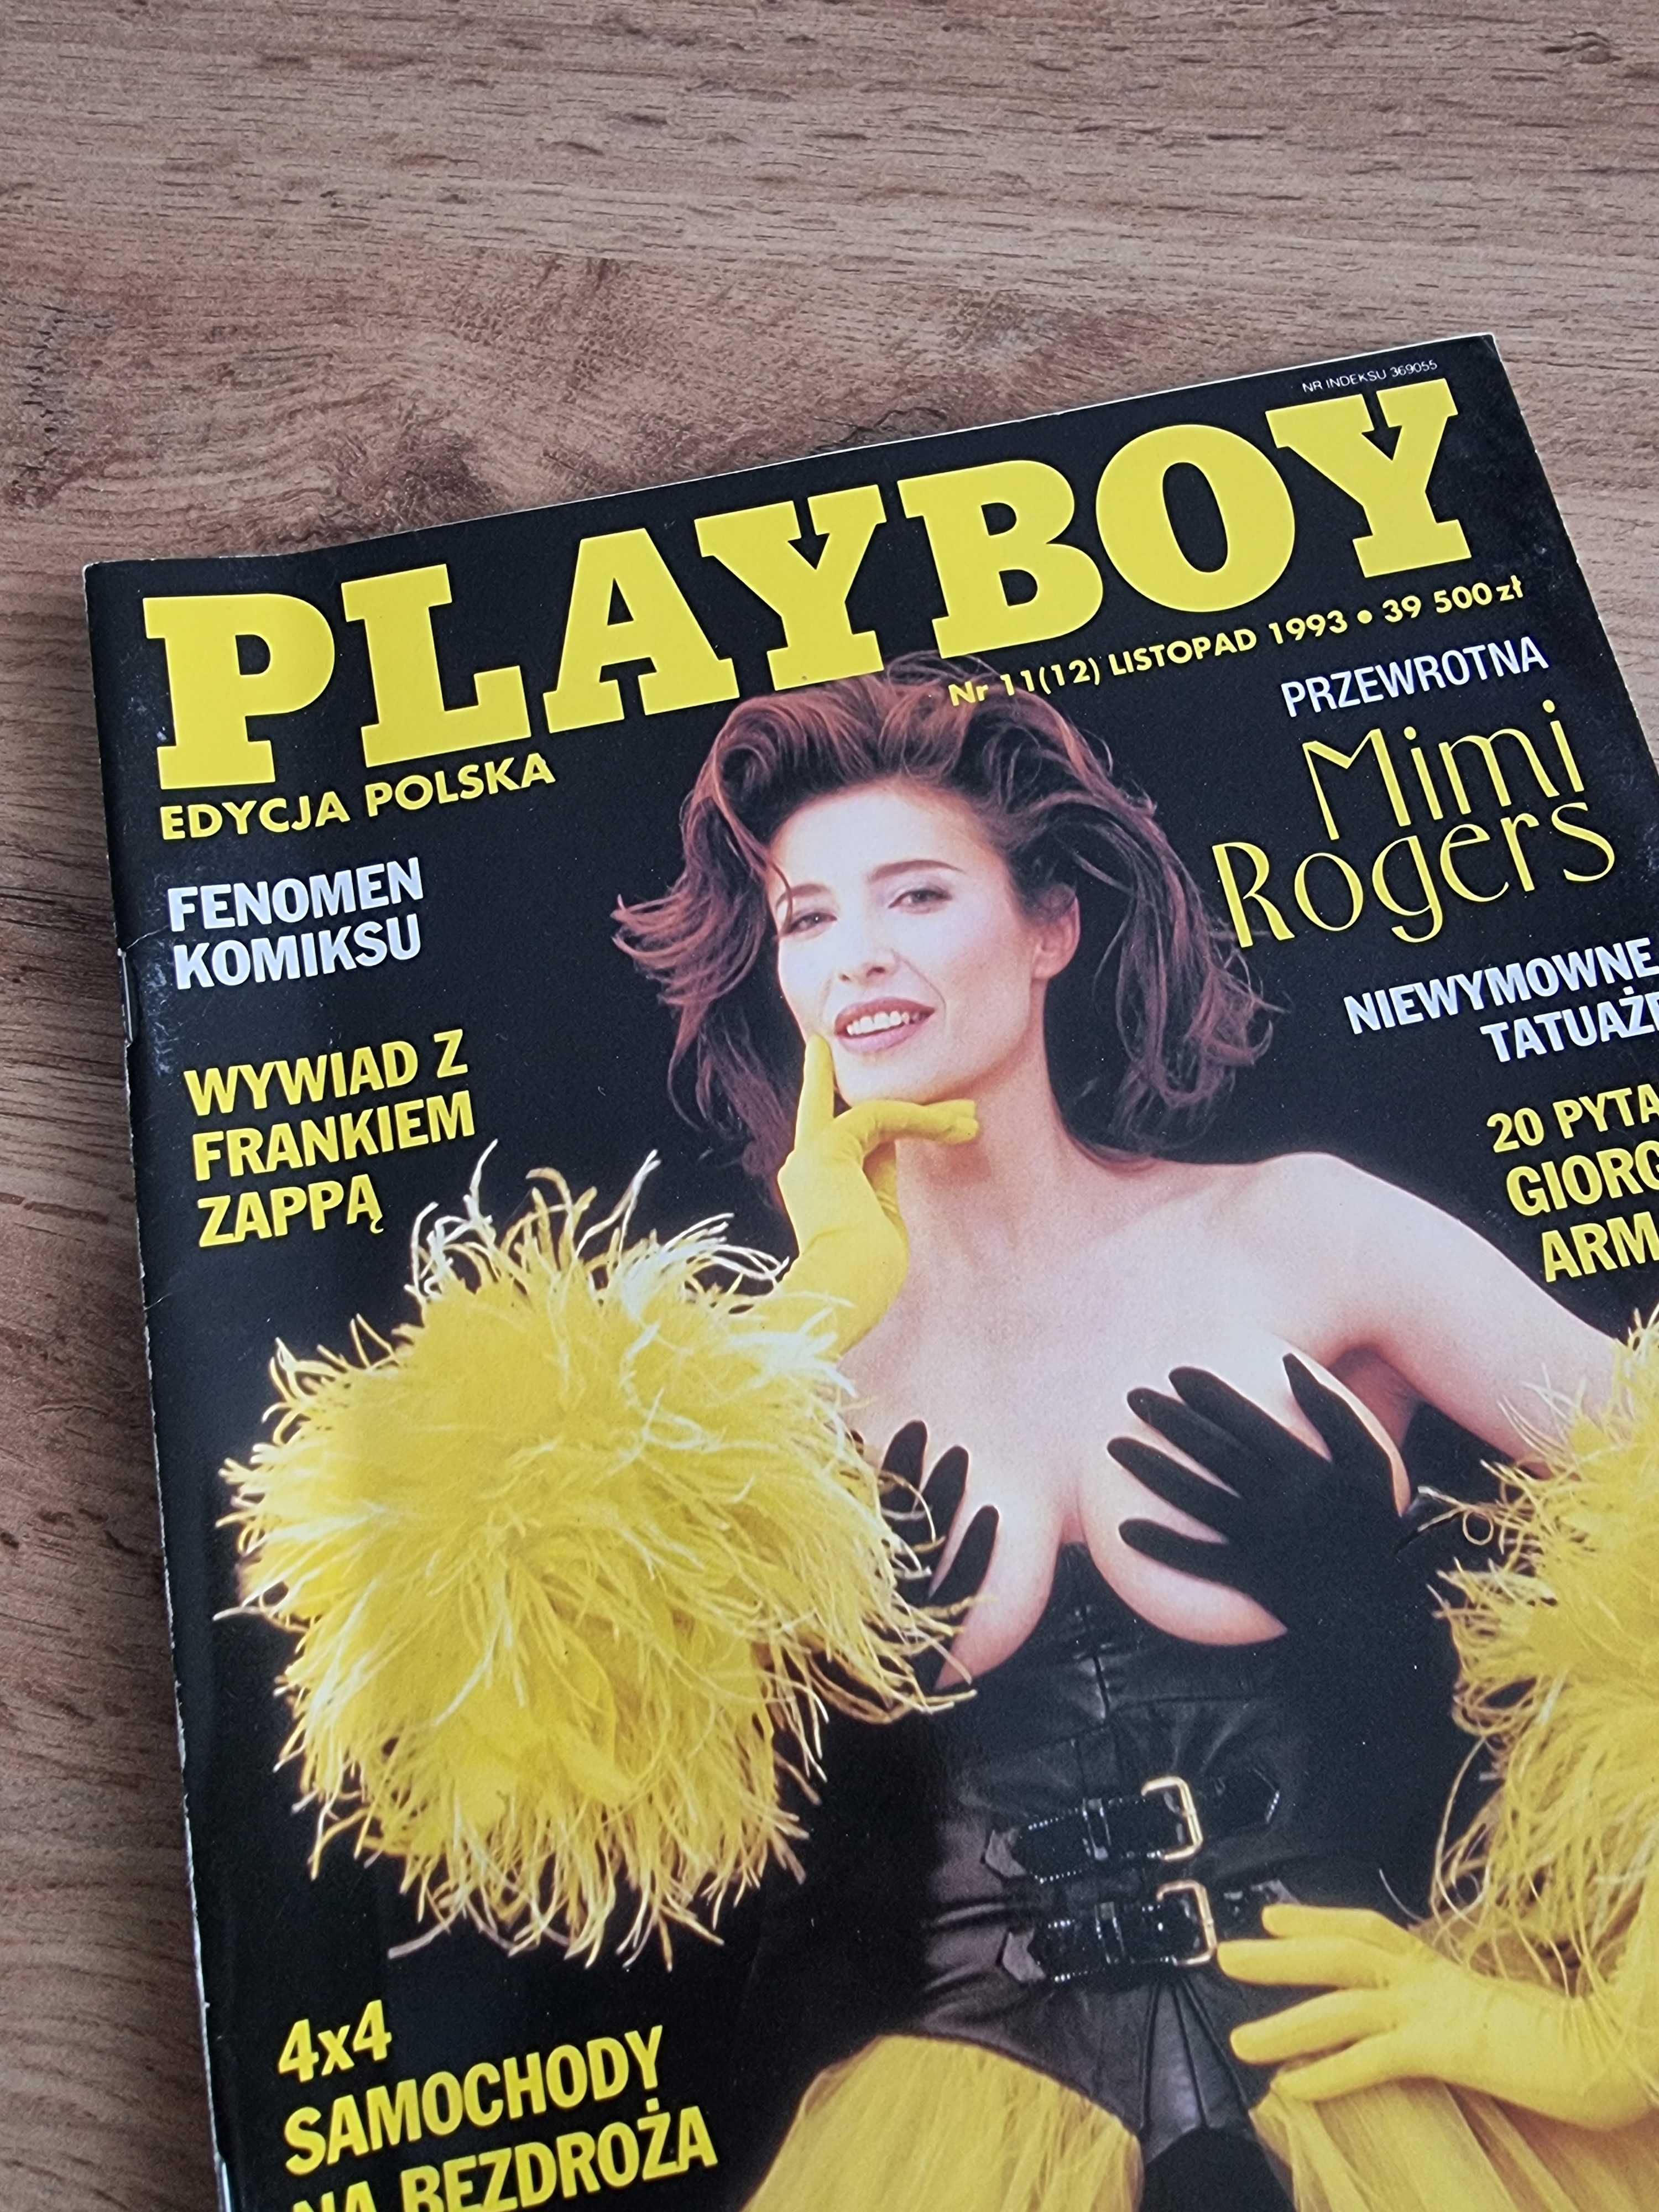 Playboy 1993 - Alesha Marie Oreskovich (rozkładówka), Mimi Rogers